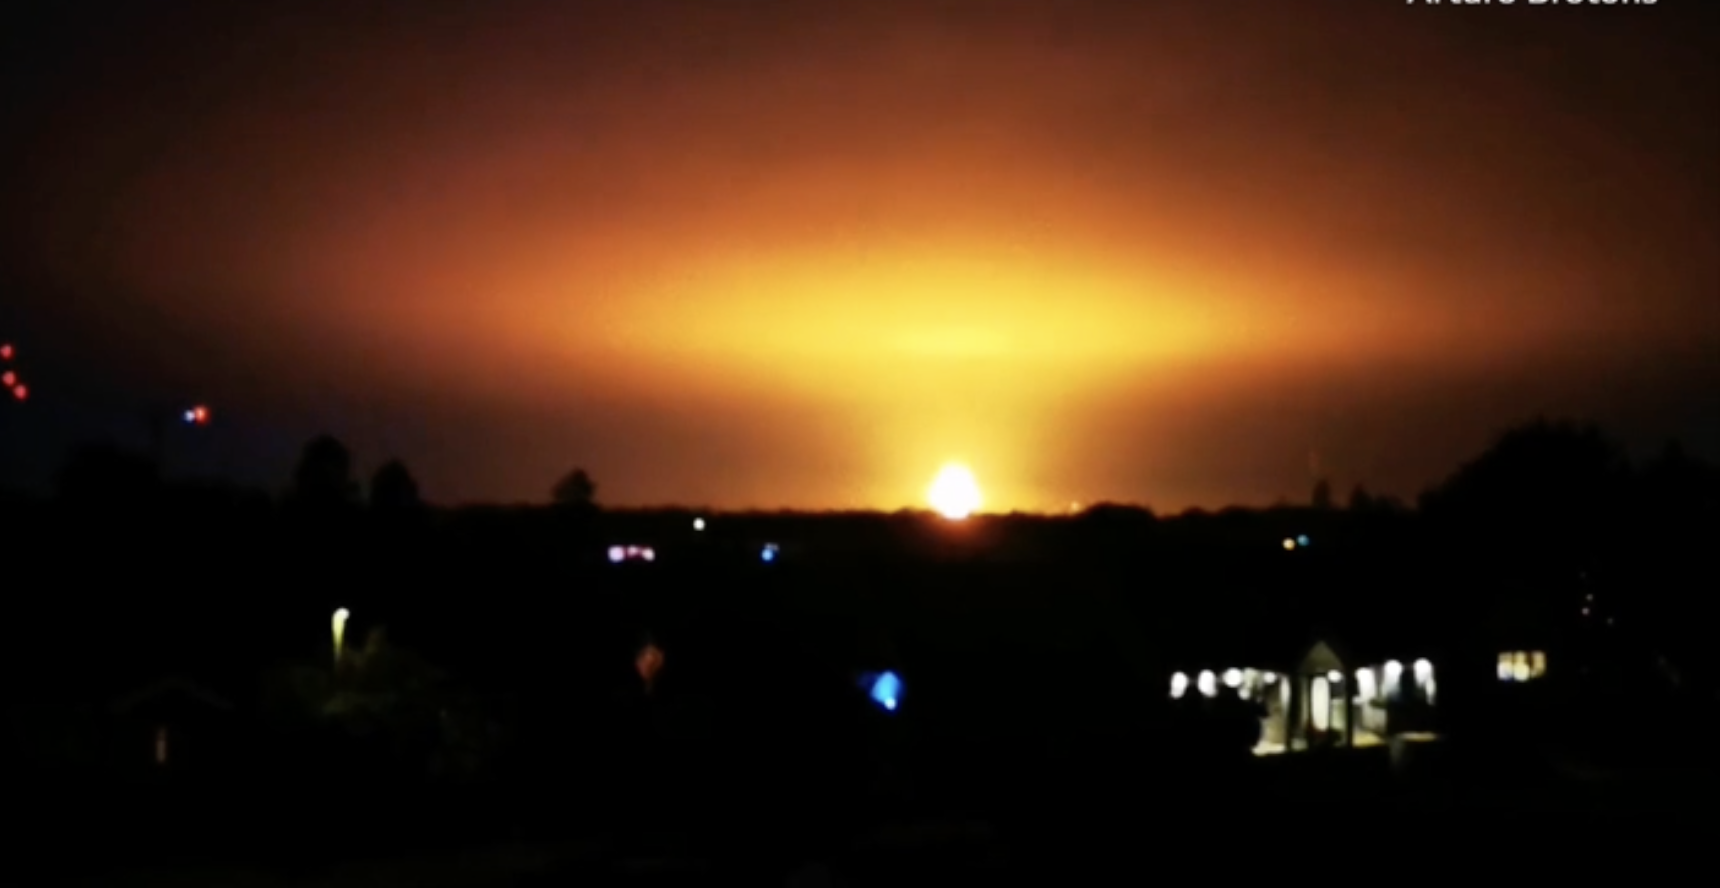 Hangos robbanás után gigantikus tűzgömb jelent meg az este Oxford egén, ami bevilágította az egész látóhatárt